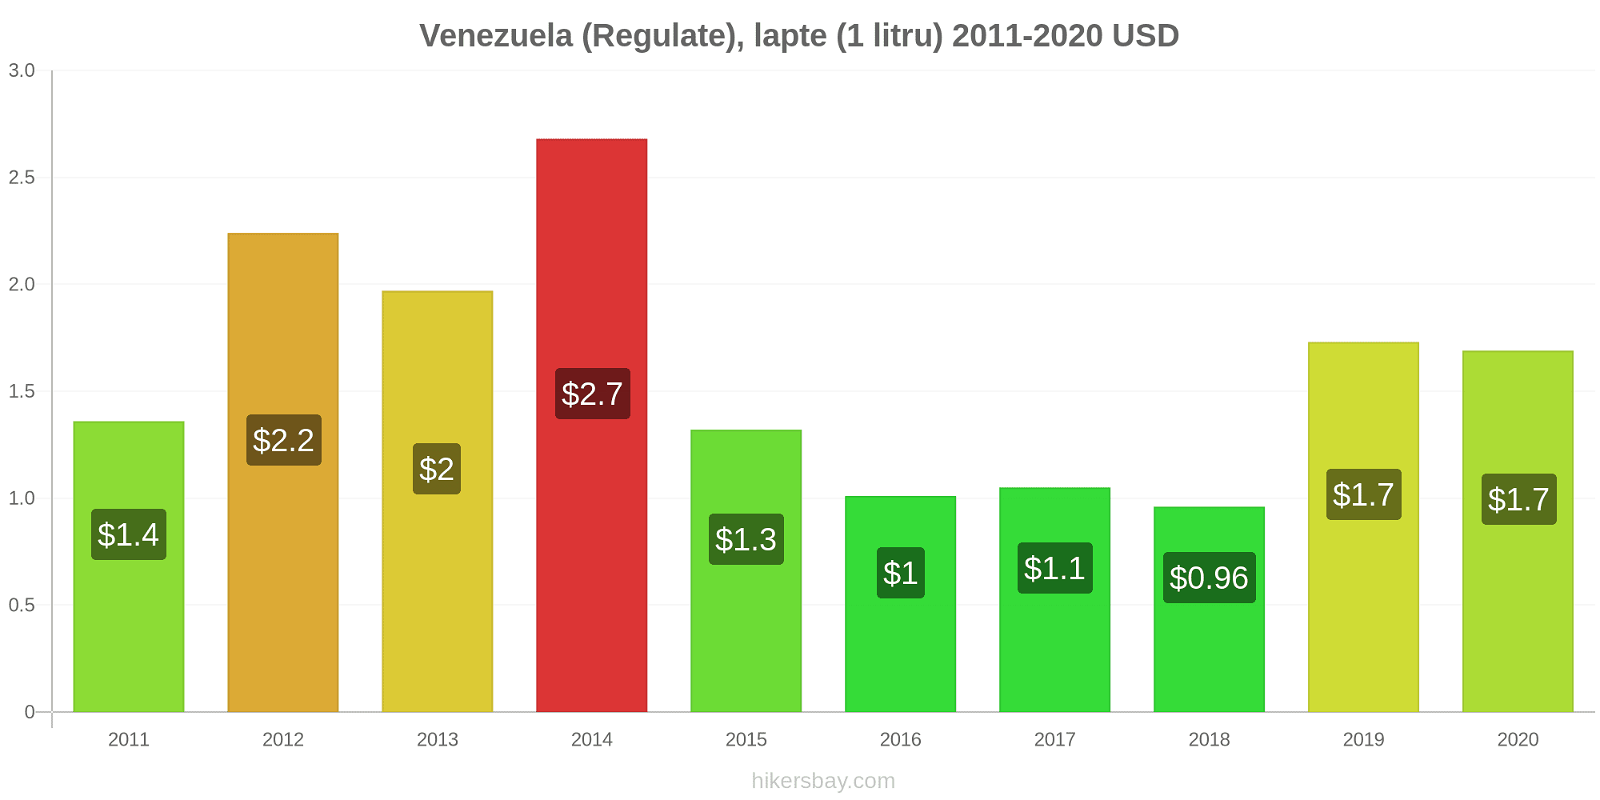 Venezuela modificări de preț (Regulate), lapte (1 litru) hikersbay.com